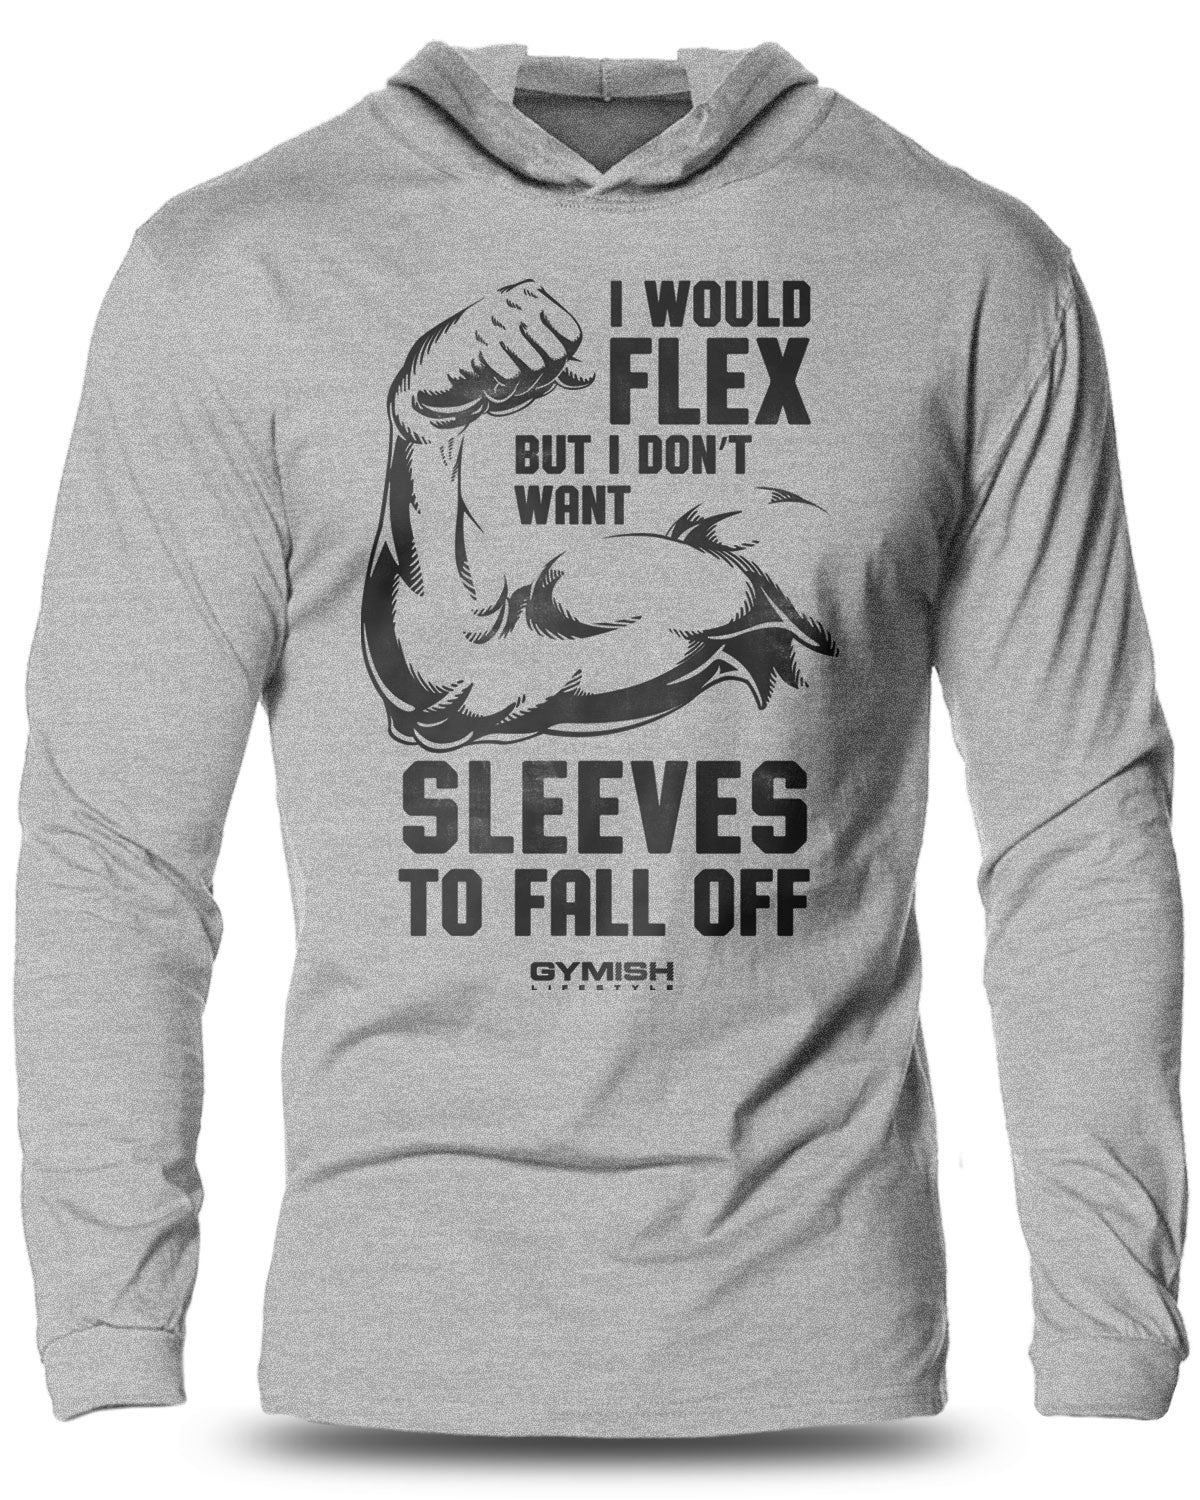 014-I Would FLEX Lightweight Long Sleeve Hooded T-shirt for Men